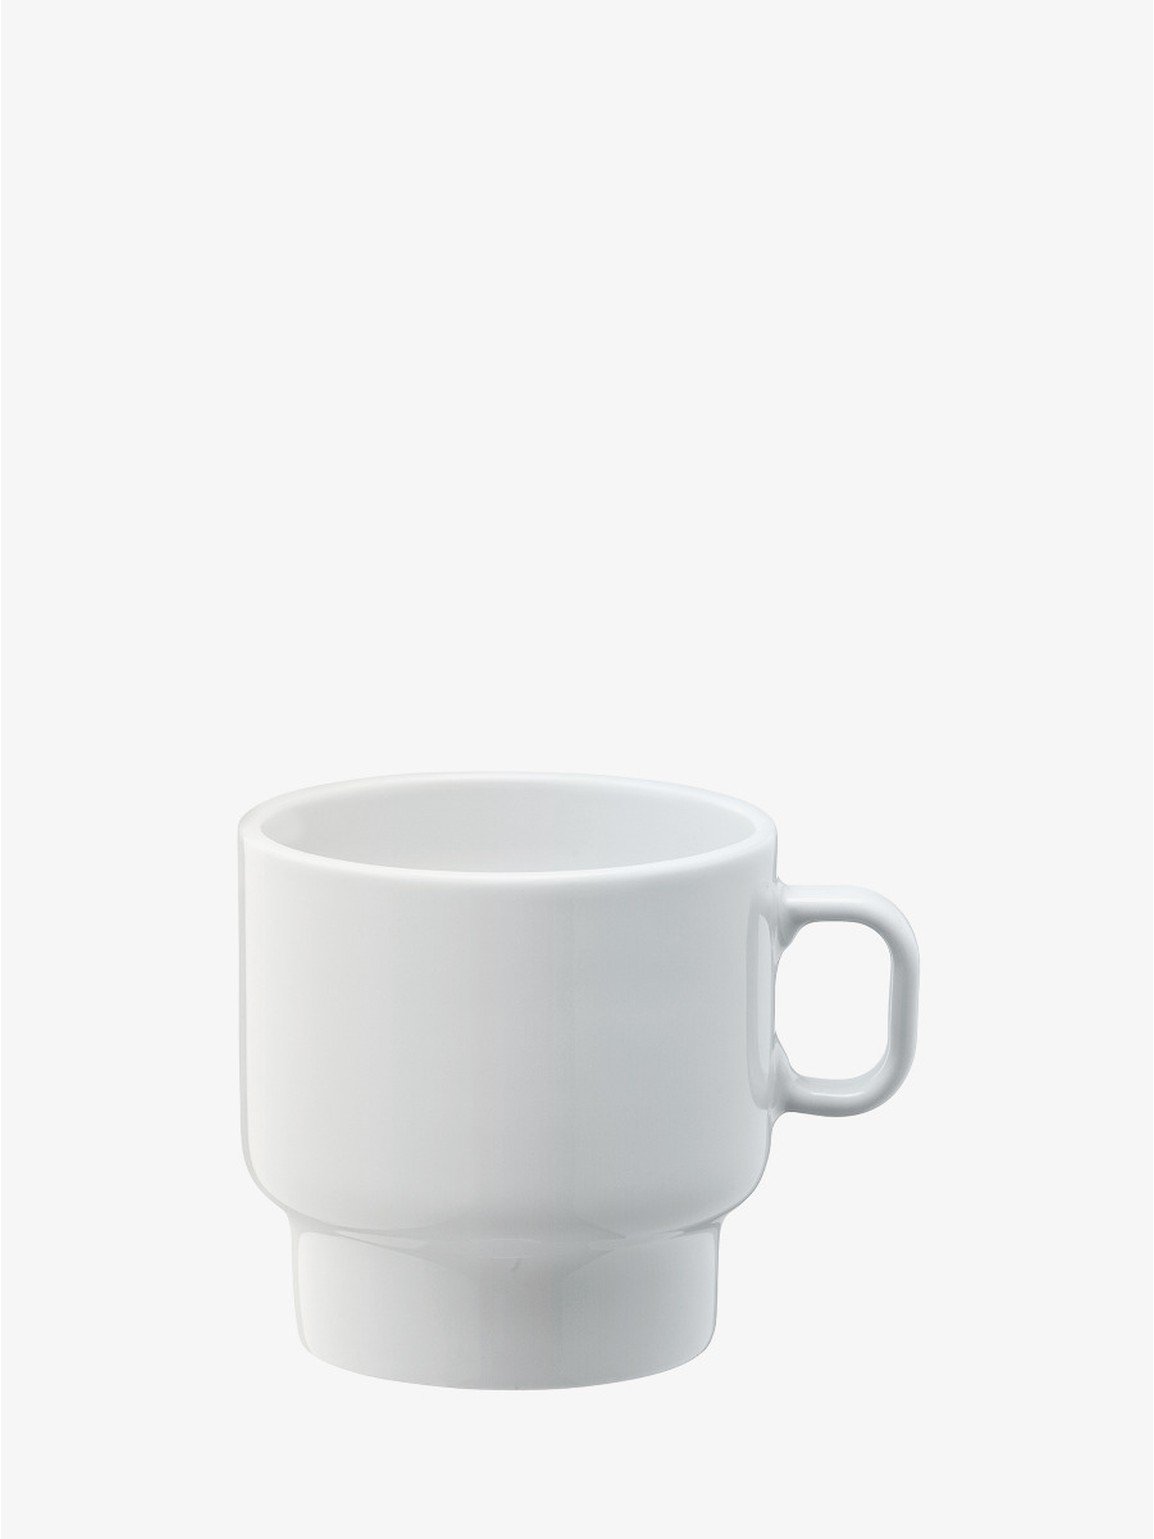 Utility Flat White Cup x 2 280ml